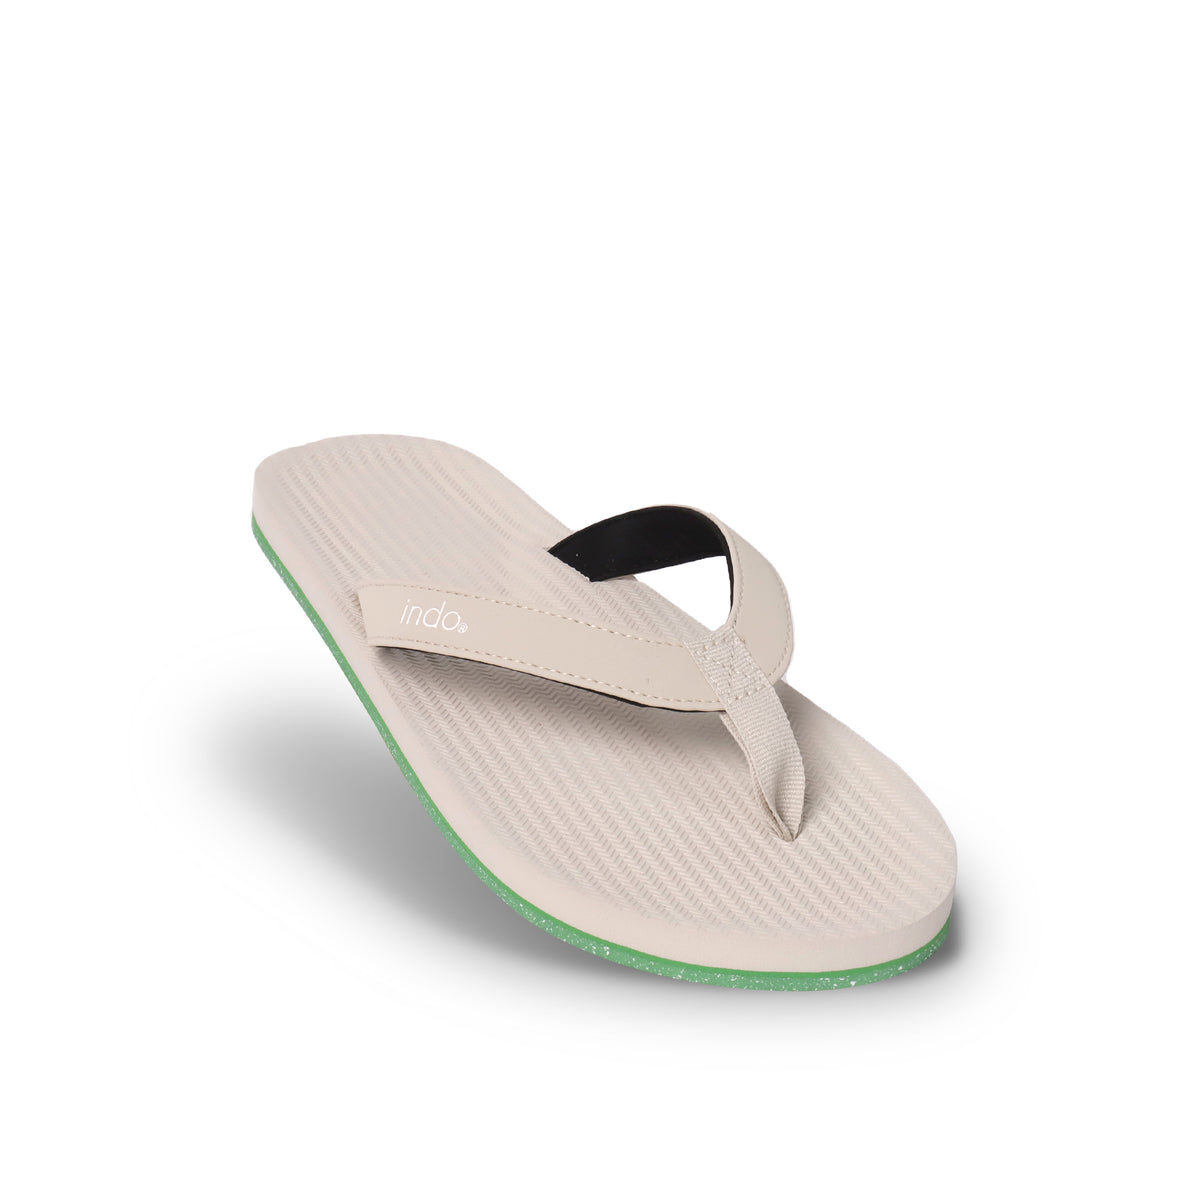 Men’s Flip Flops Sneaker Sole - Sea Salt/Lime Sole